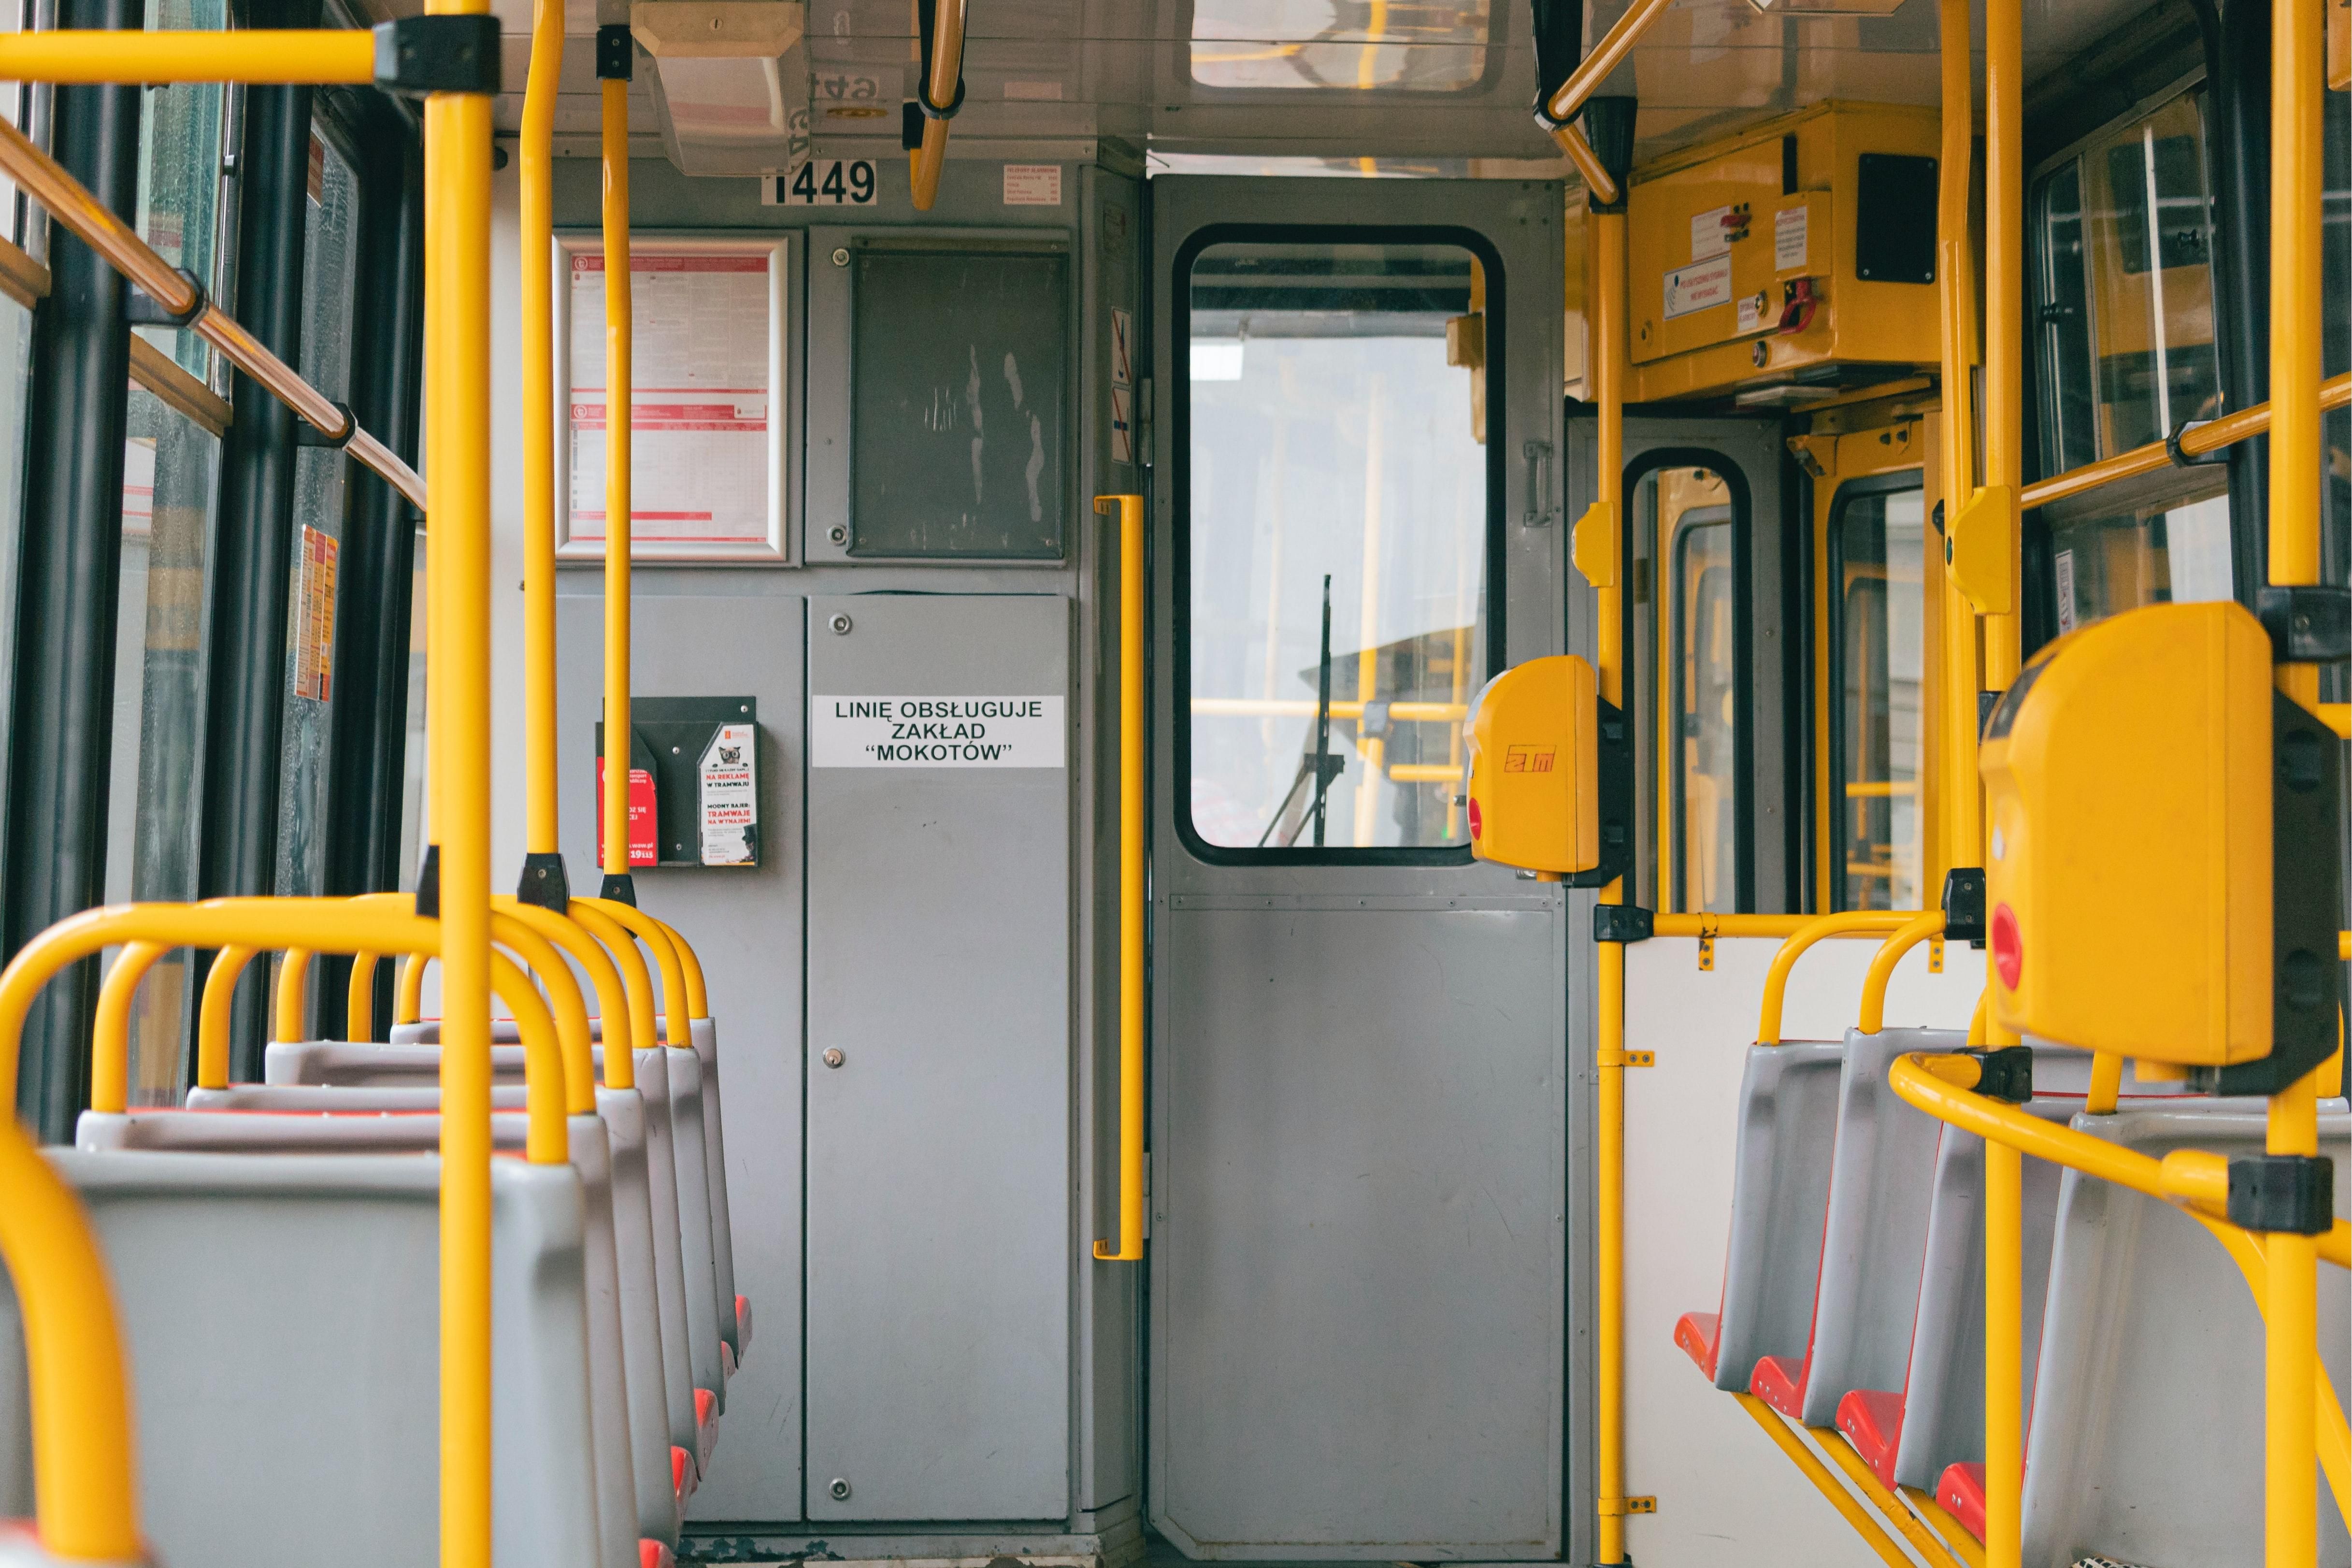 Общественный транспорт в Варшаве будет курсировать чаще - Закордон